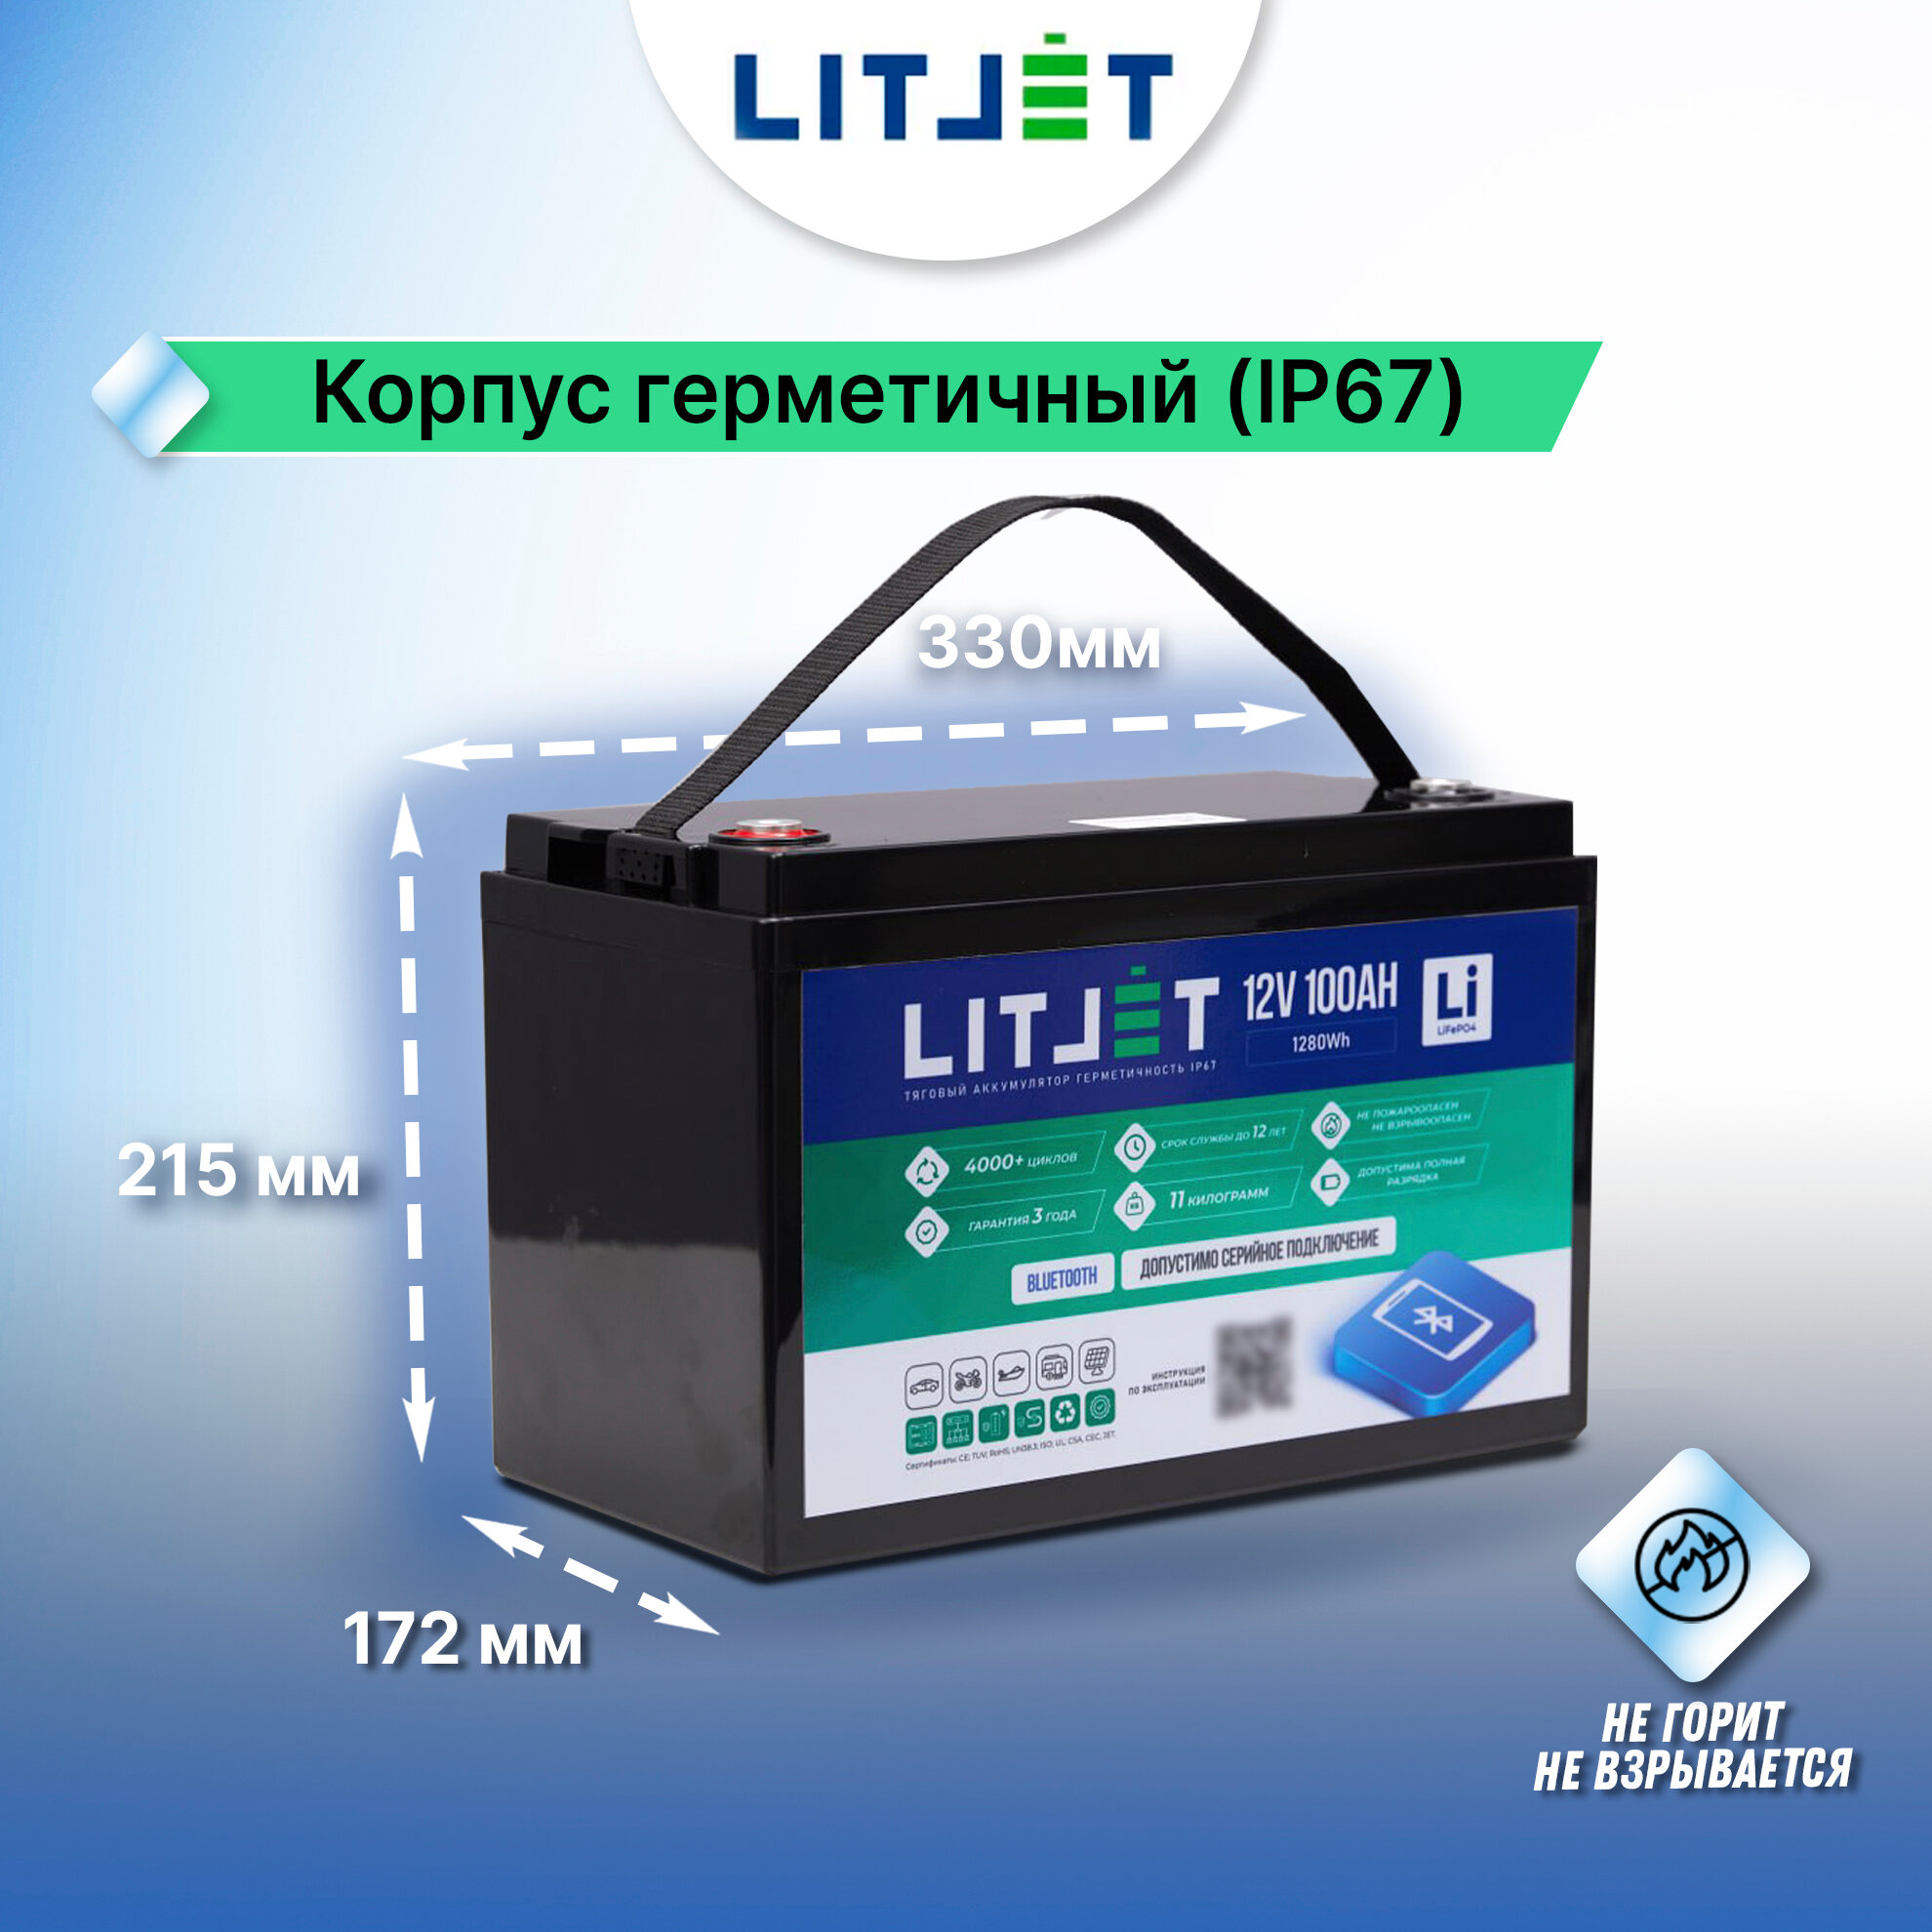 Тяговый аккумулятор LiFePO4 LITJET 12V 100Ah с Bluetooth для ИБП солнечных электростанций лодочных моторов автодомов/прицепов